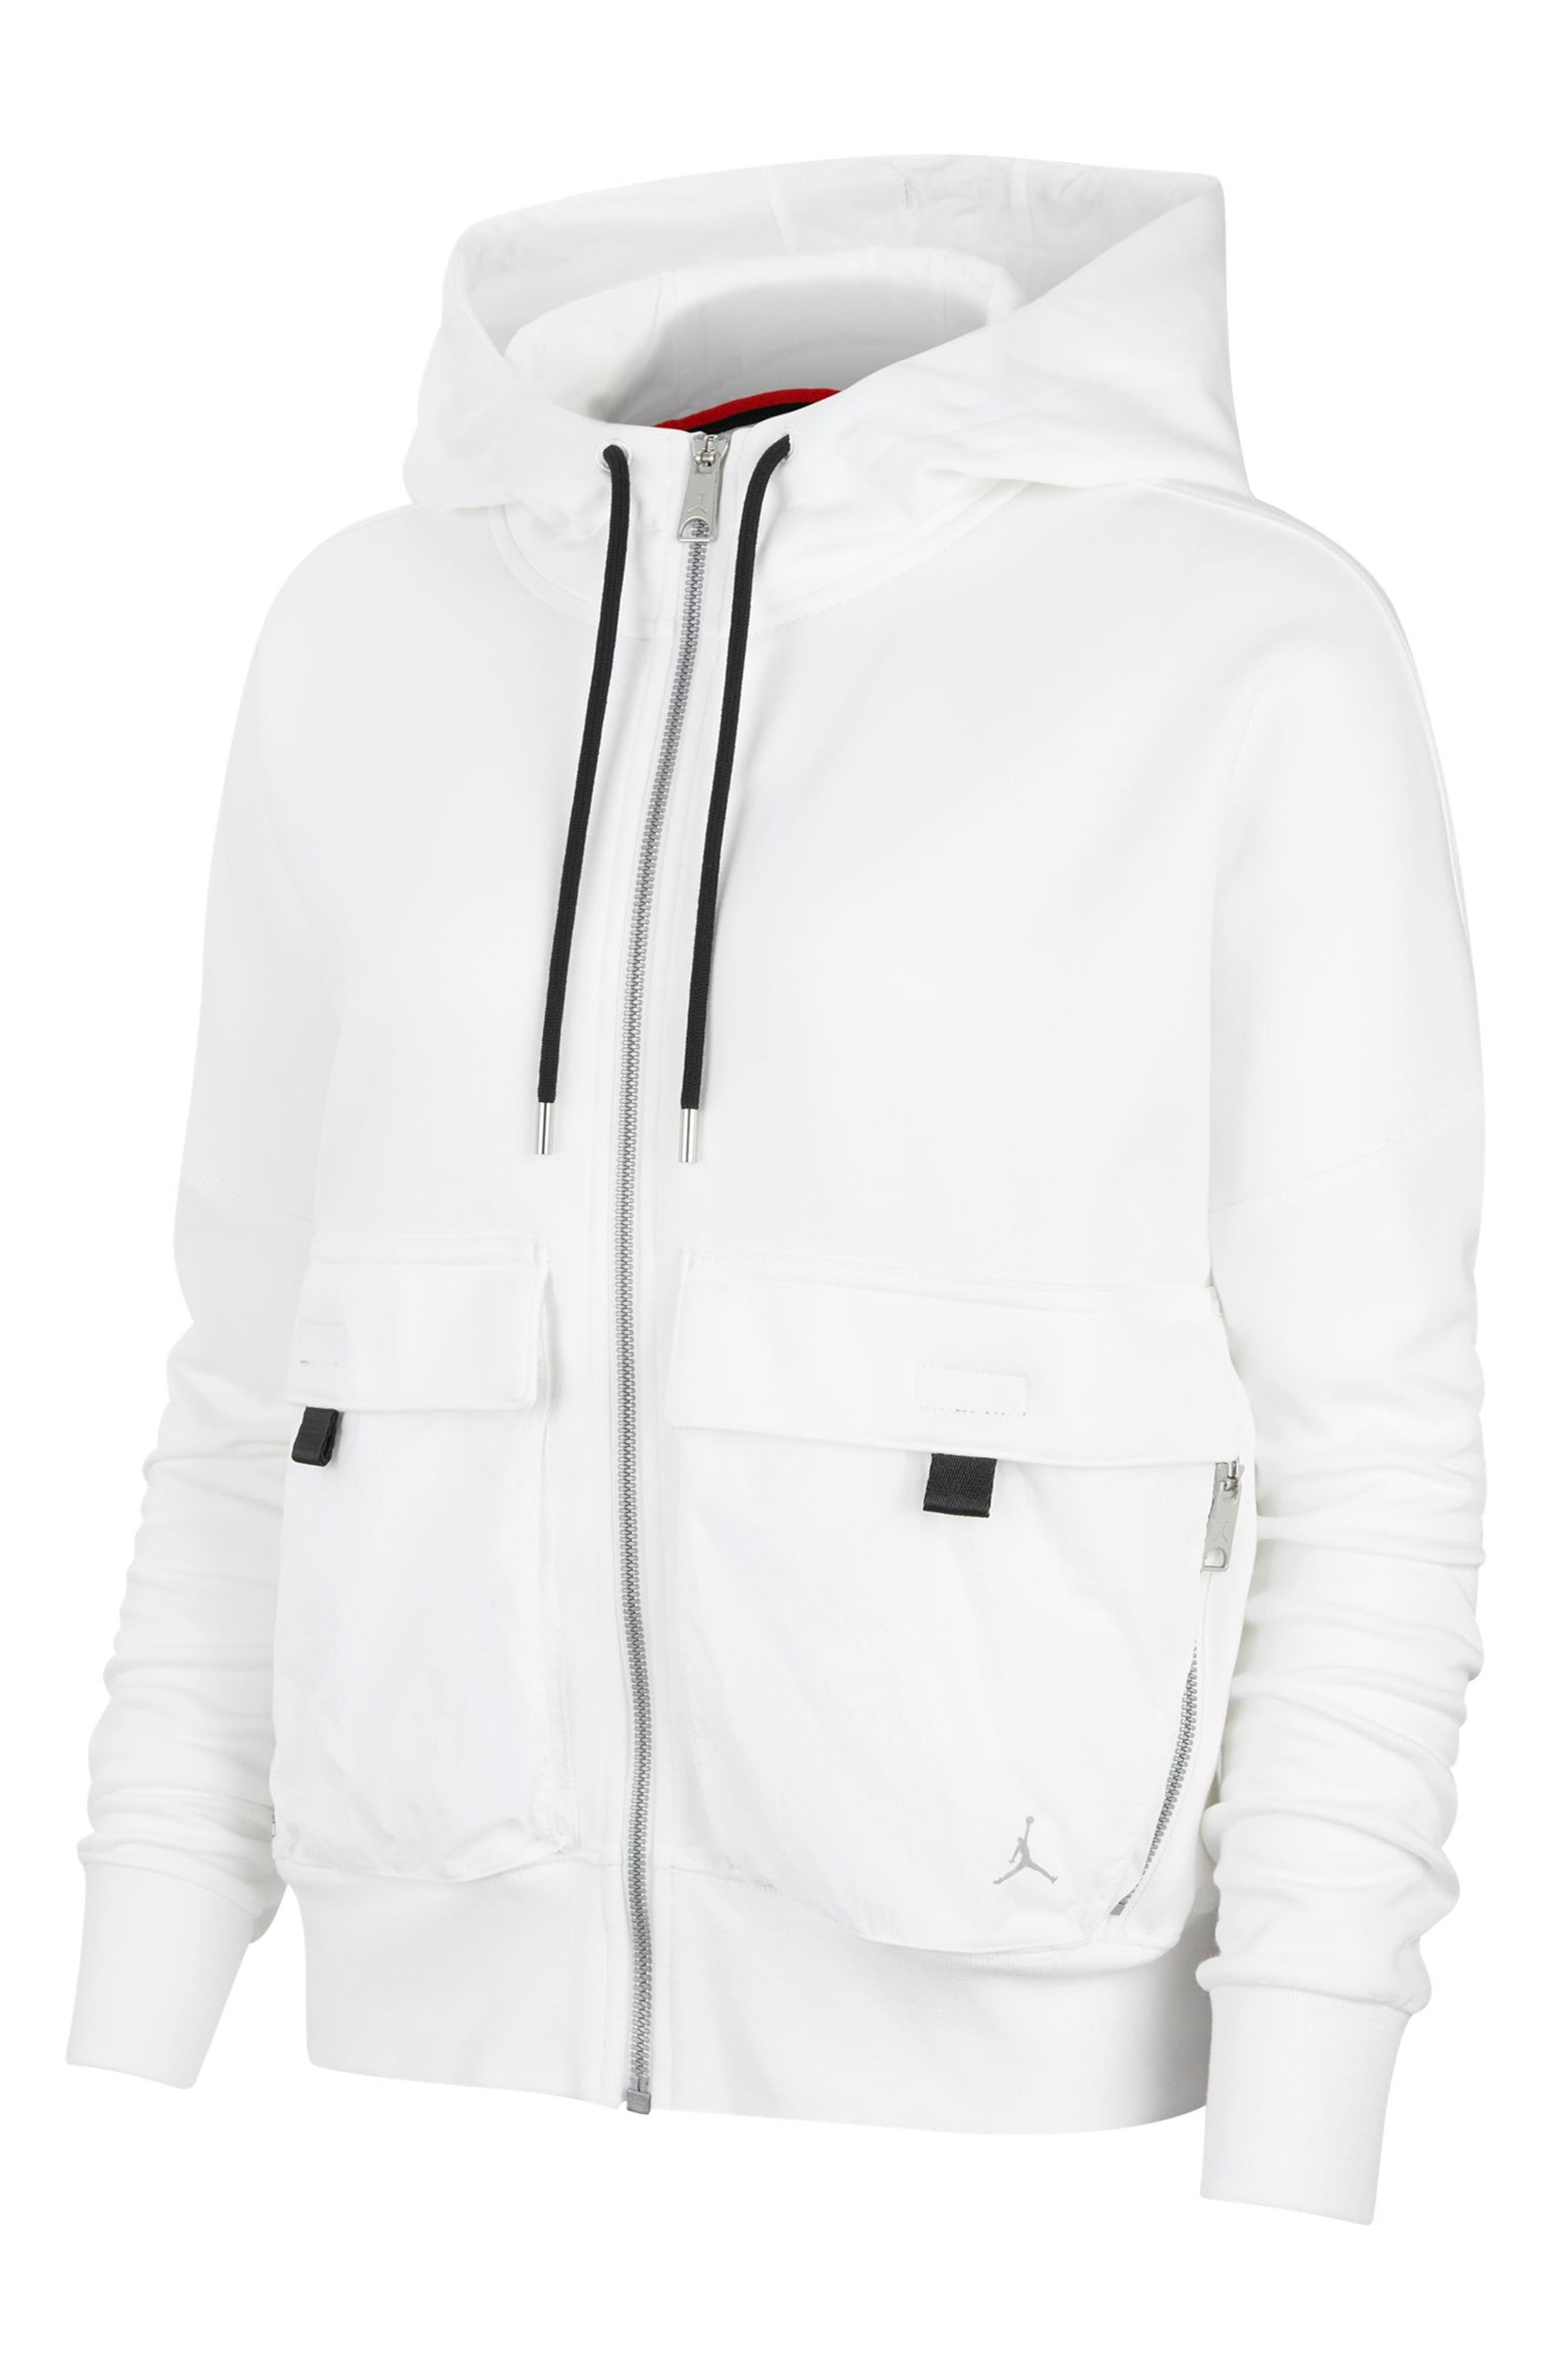 white nike zip up jacket